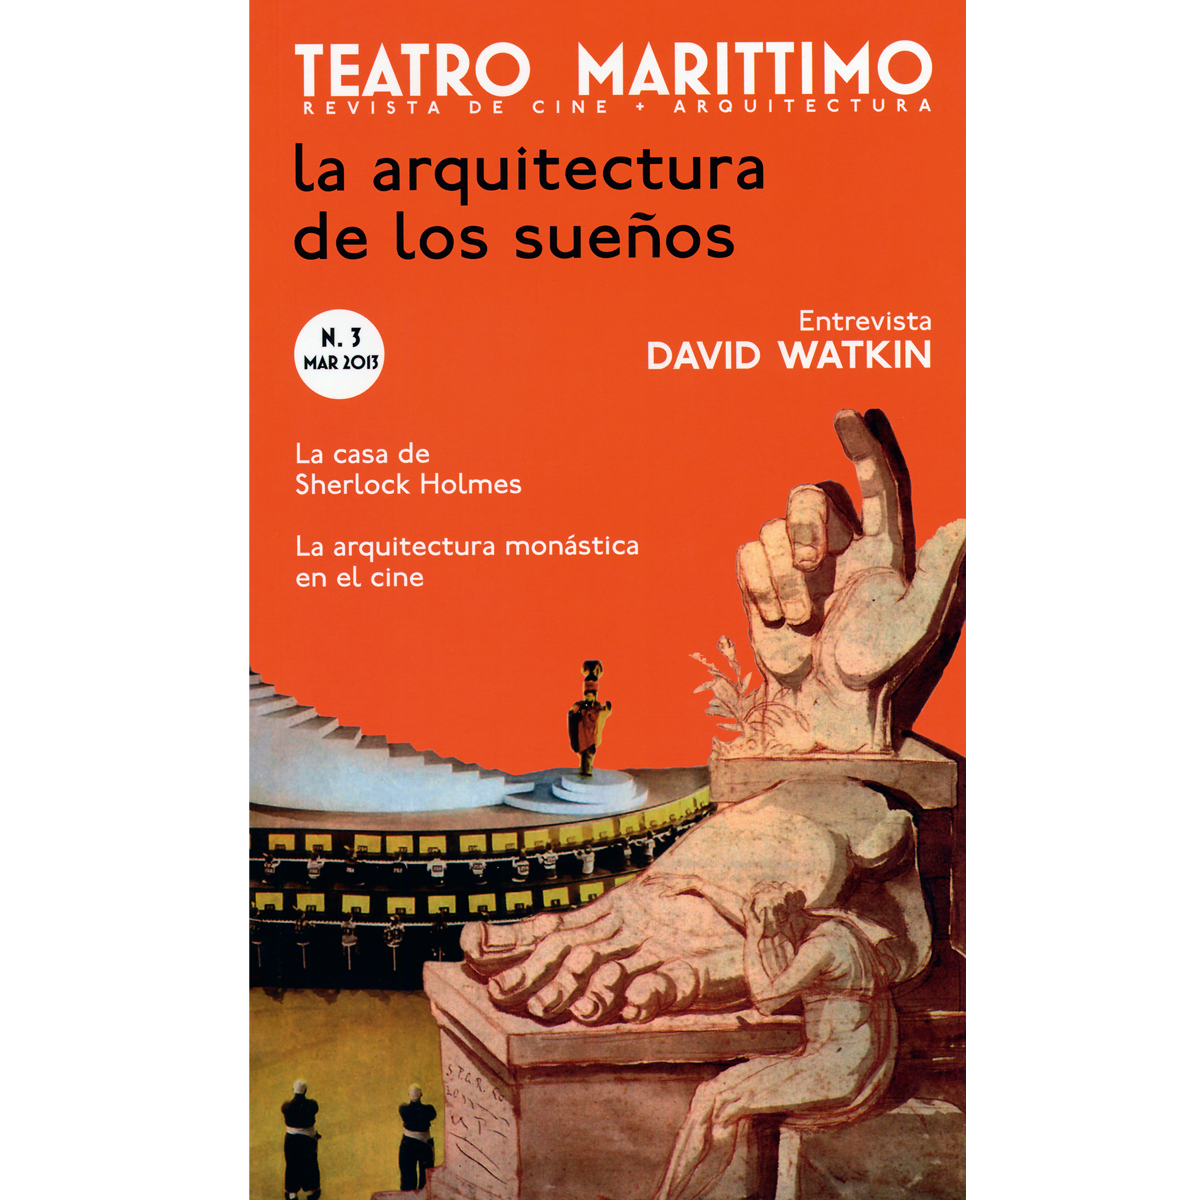 Teatro Marittimo: La arquitectura de los sueños